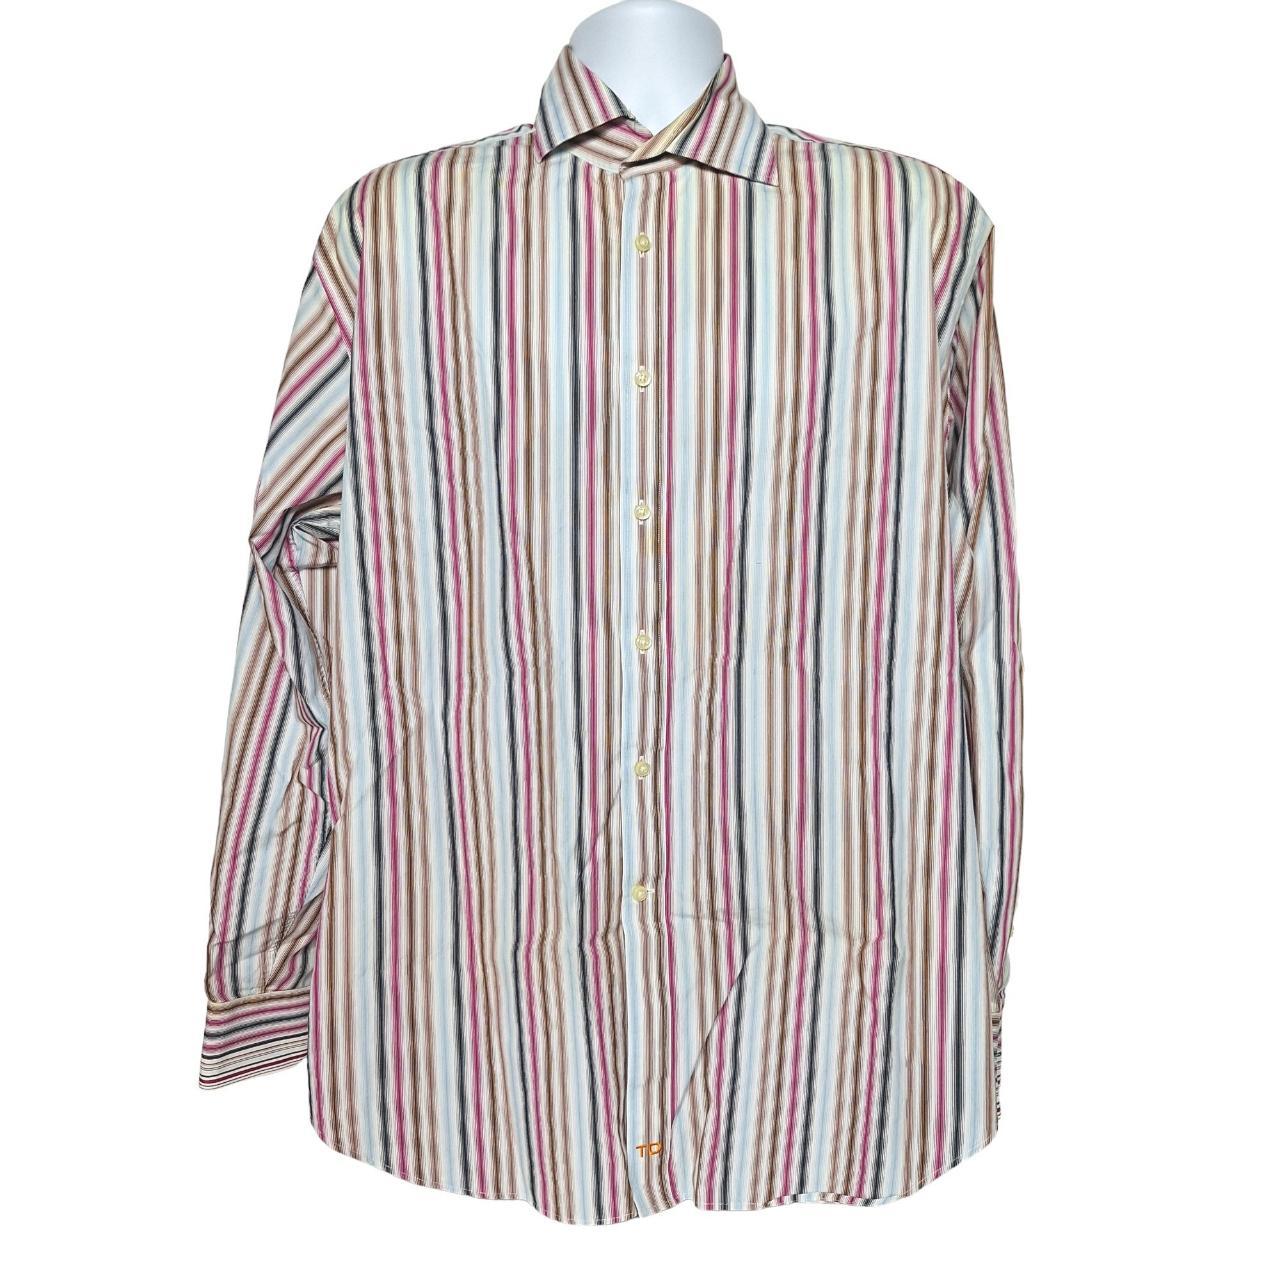 Thomas Dean Men's Button Up Shirt Size XL Multicolor... - Depop